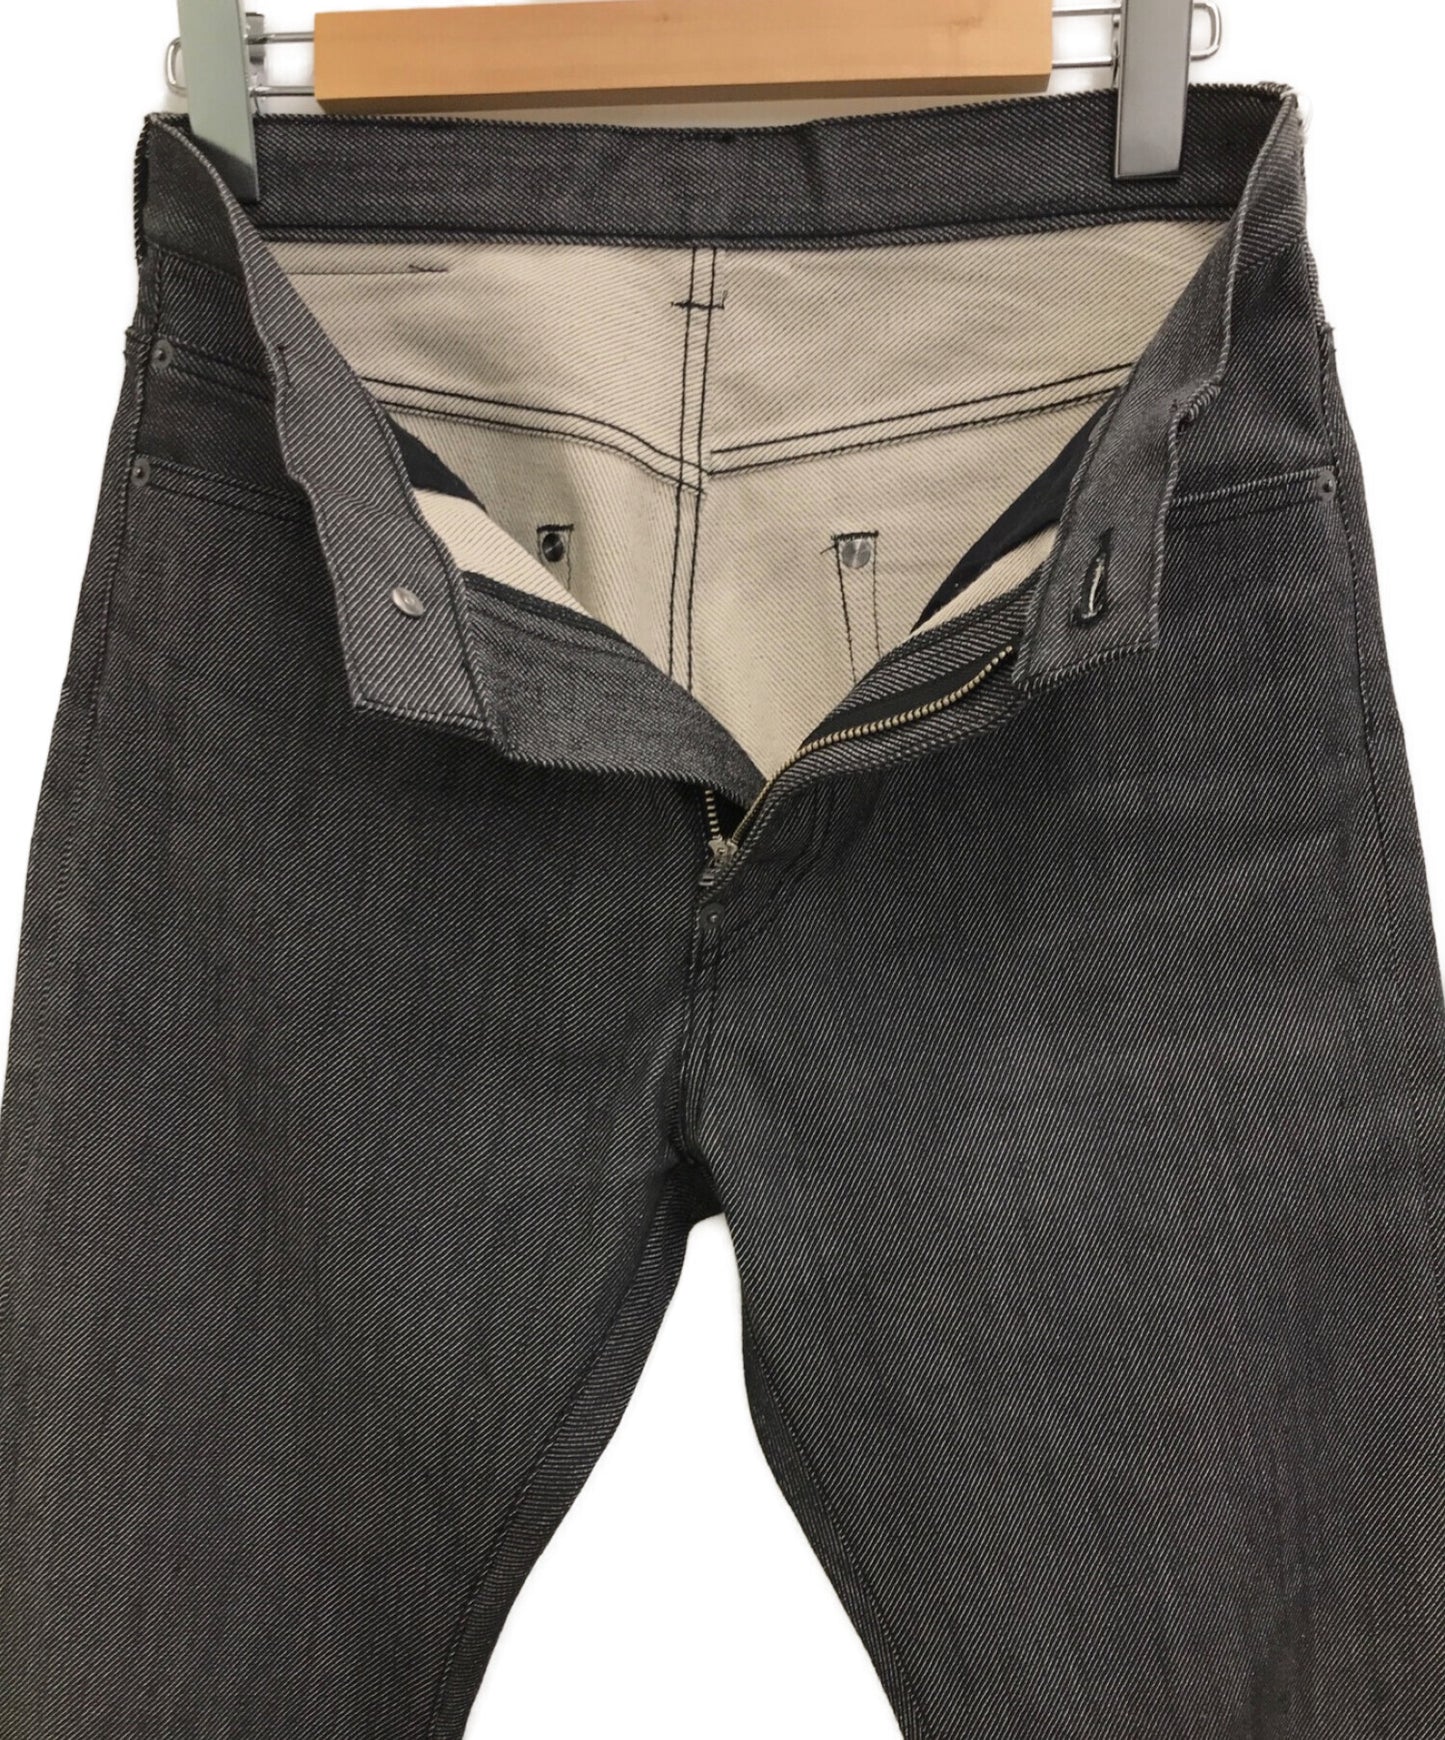 Undercover 5-pocket ตรงเดนิม / กางเกงยีนส์ / กางเกงยีนส์ / พื้น UCY1503